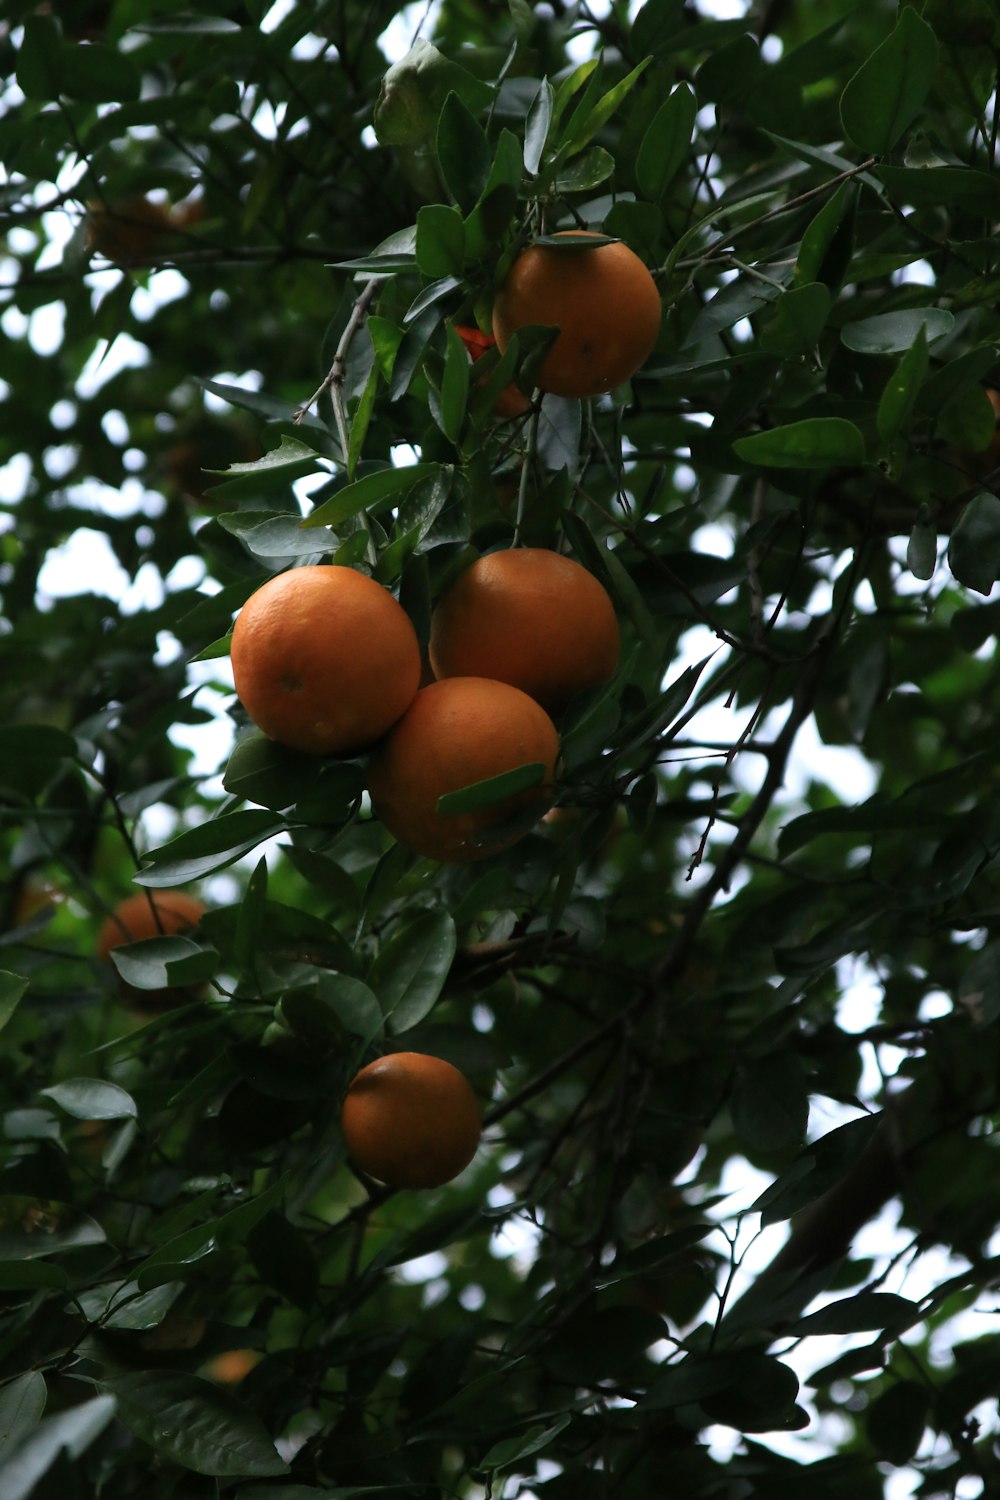 ein Baum gefüllt mit vielen reifen Orangen